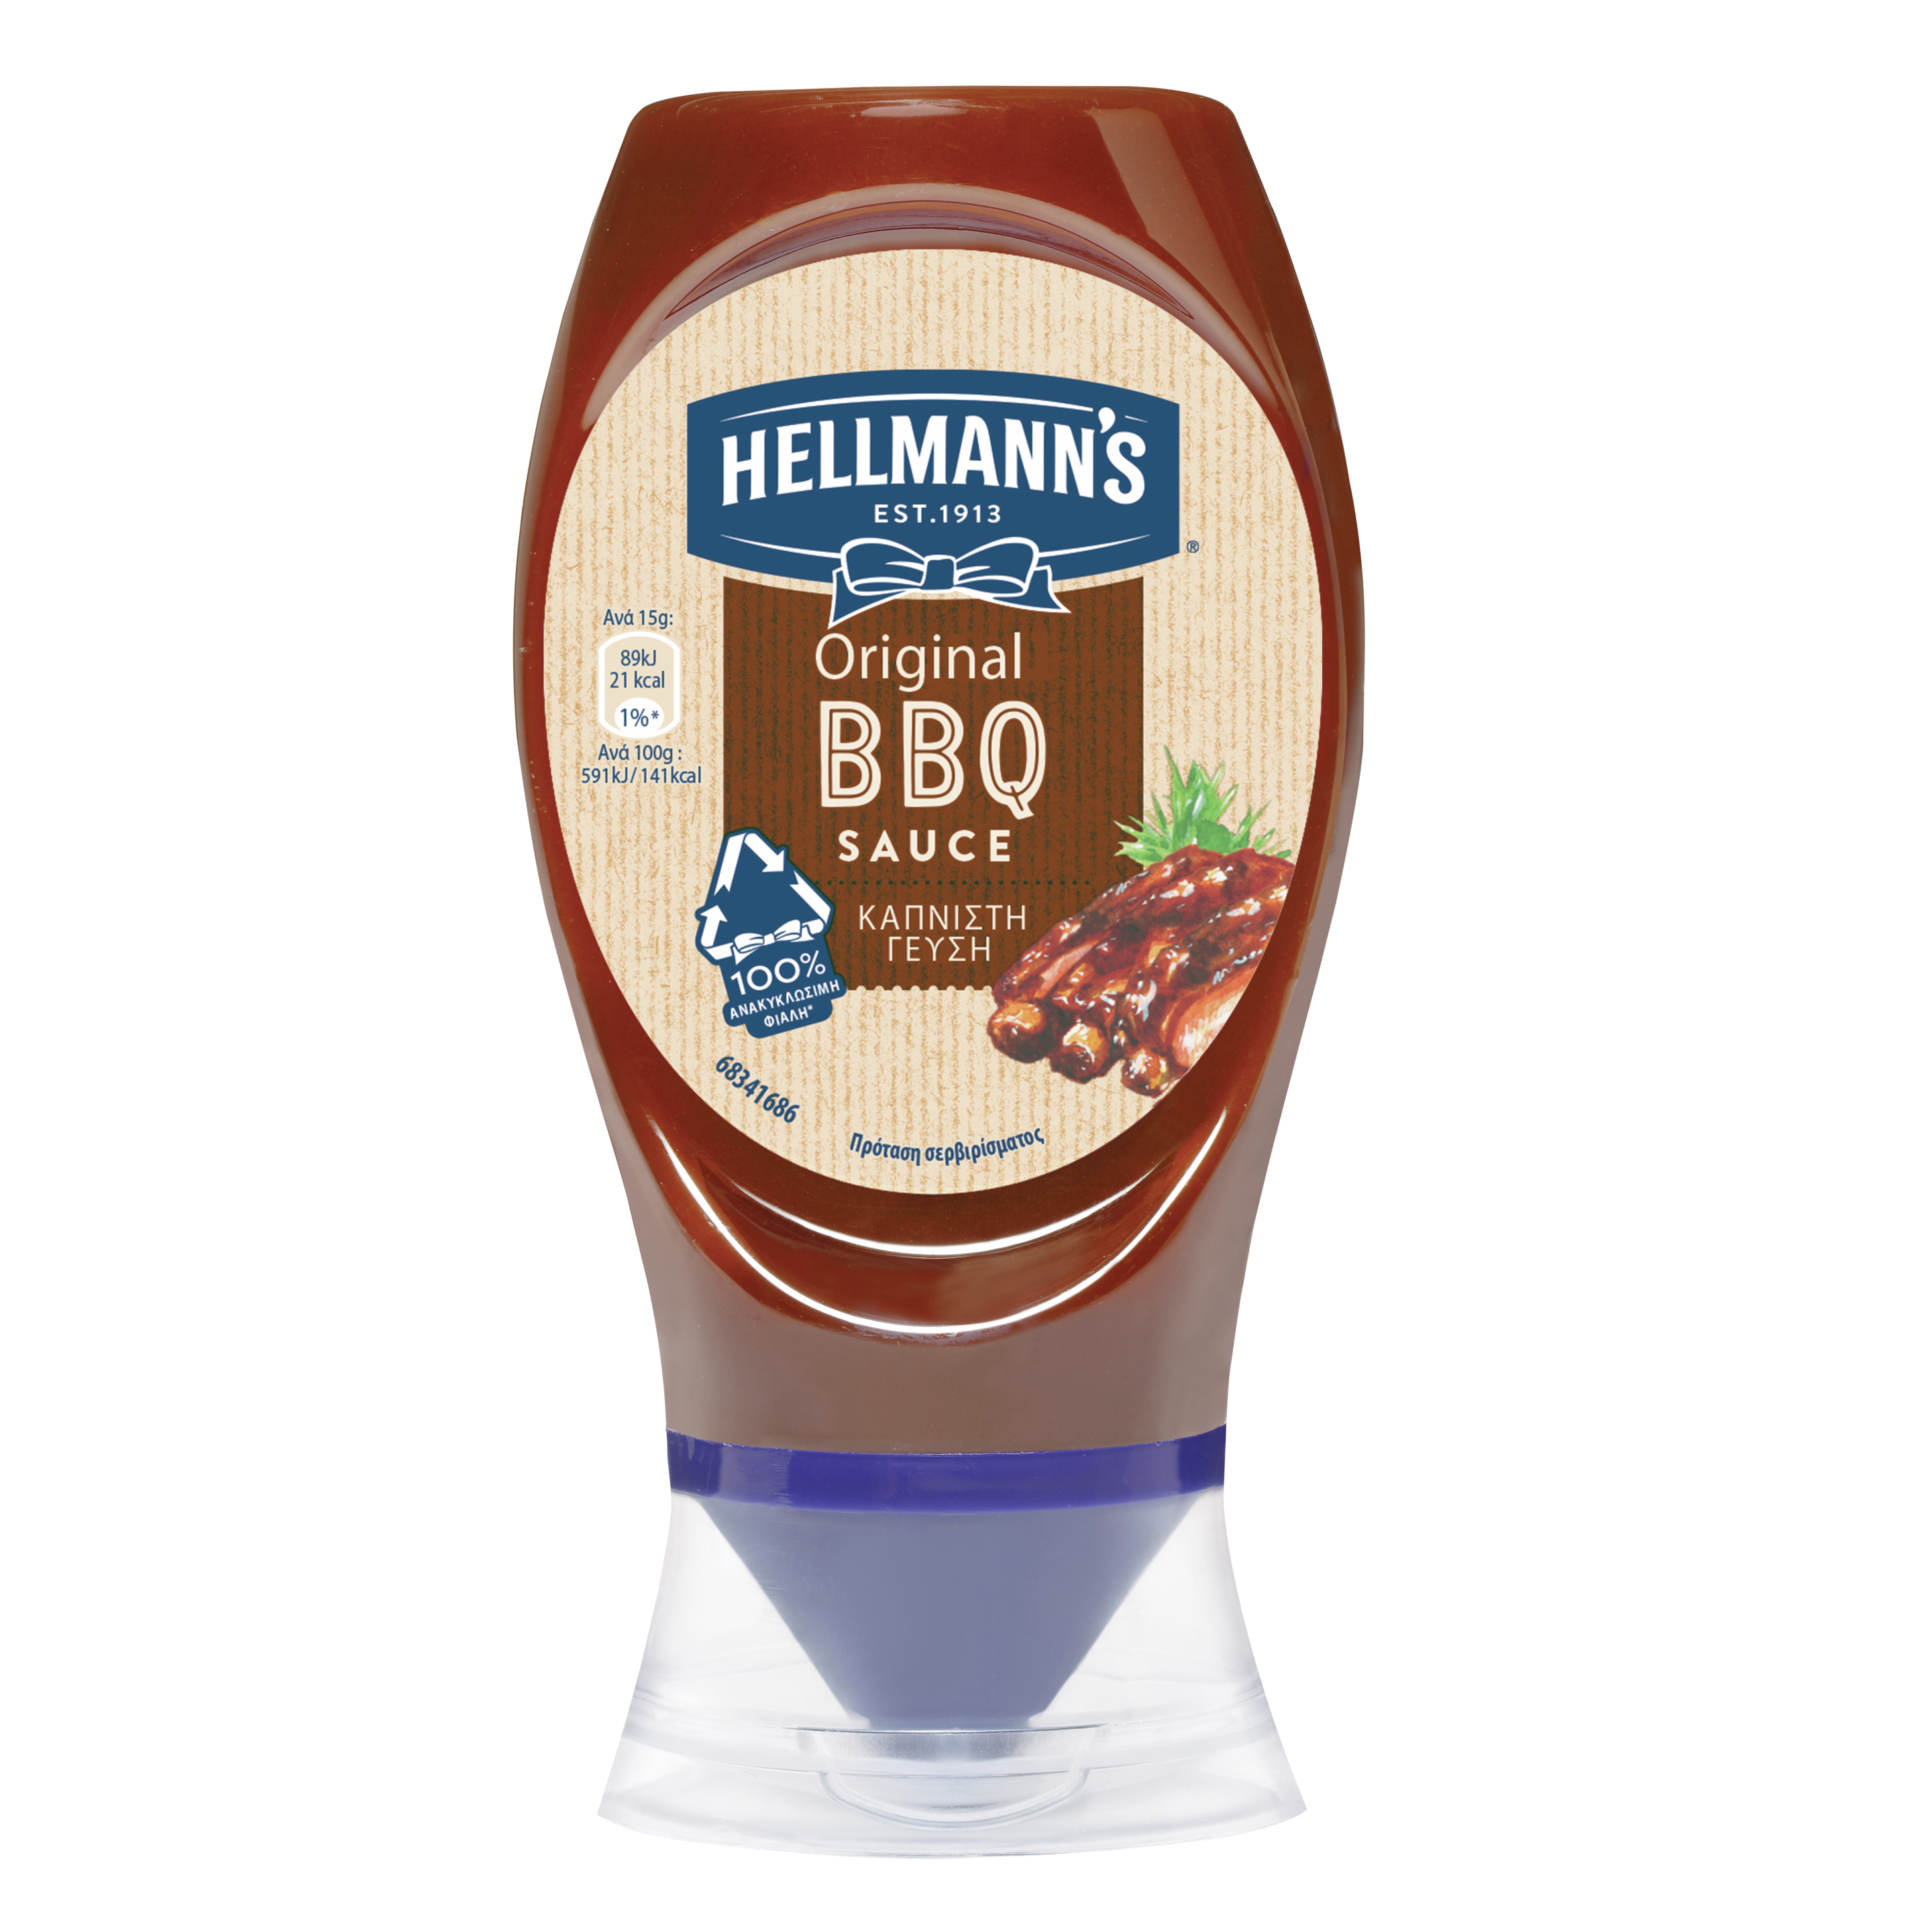 Hellmann's Original BBQ Sauce